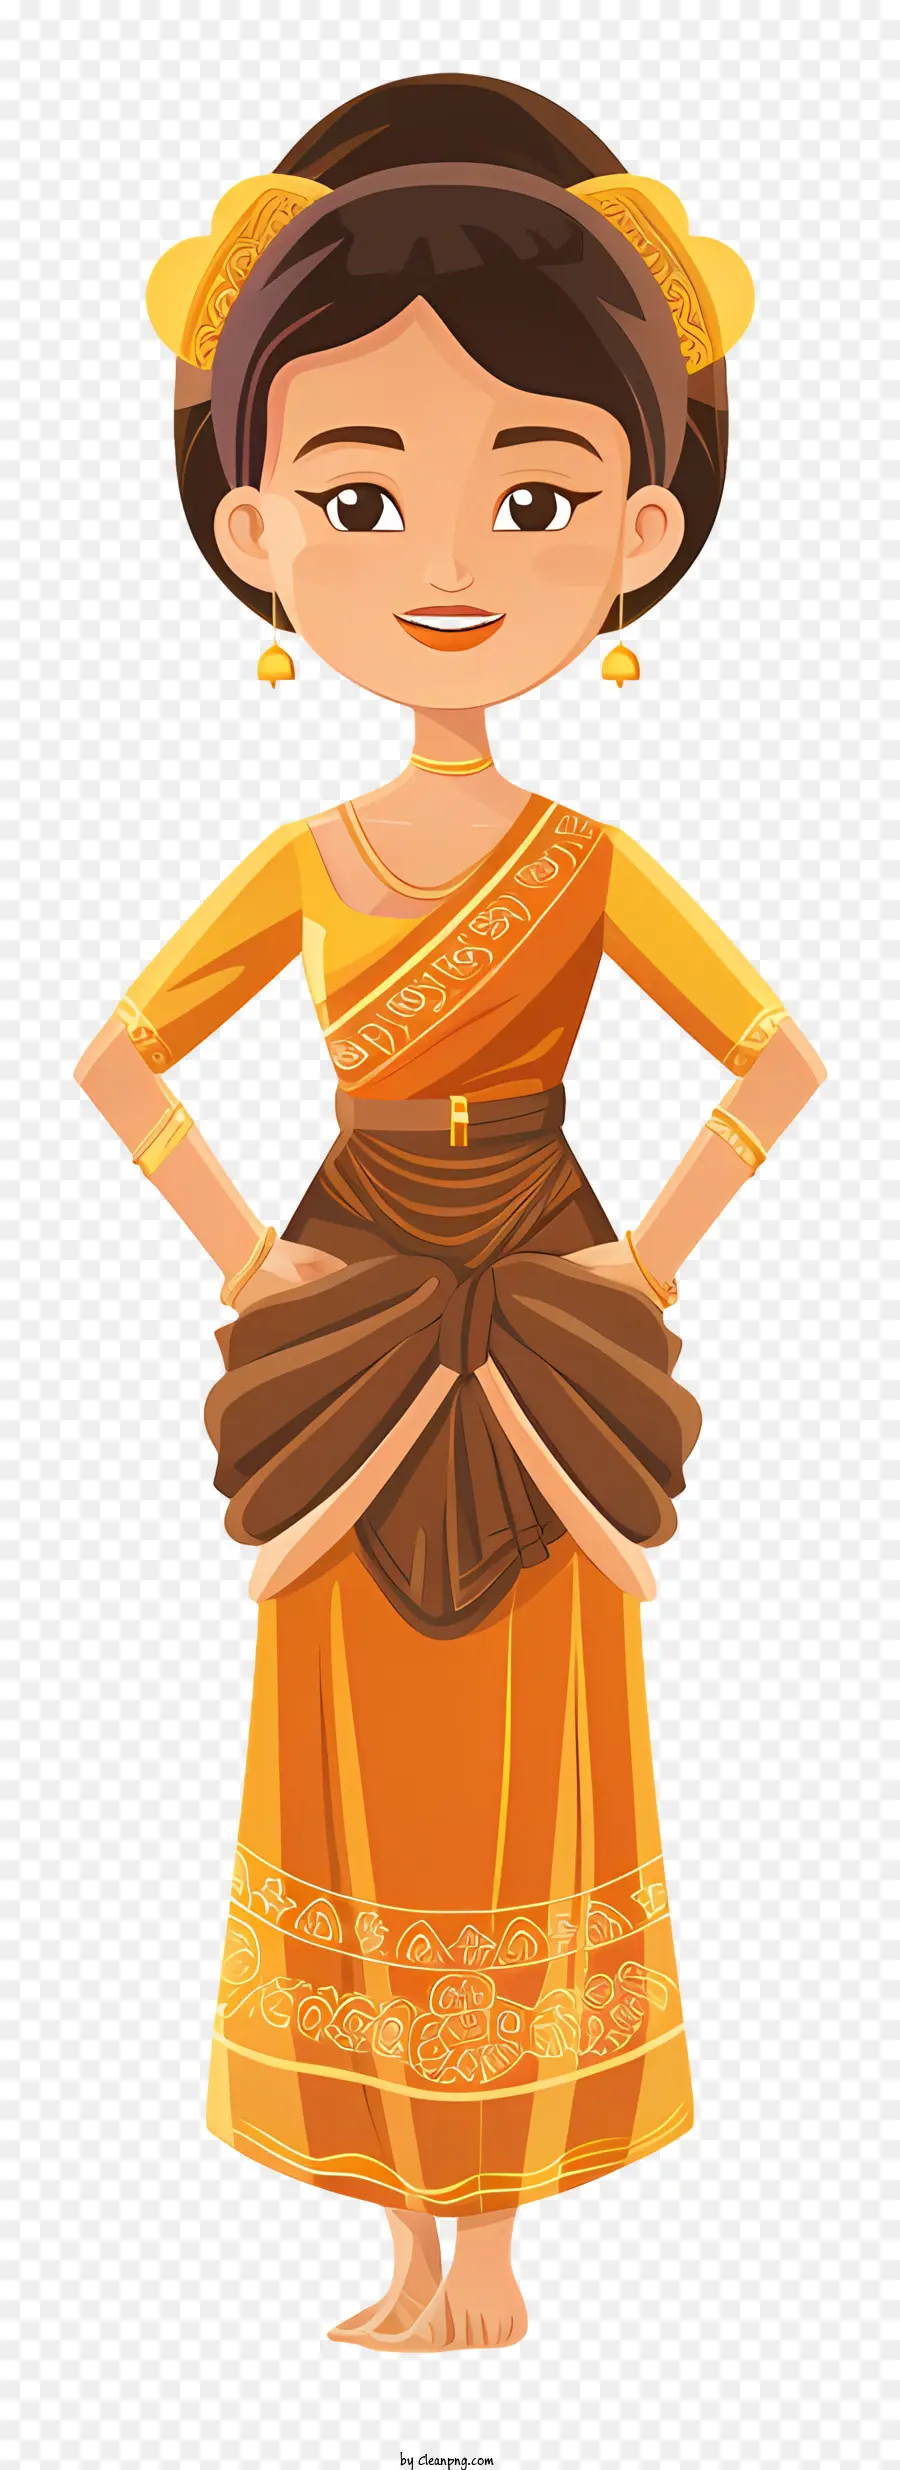 Kambodschanische Frau Cartoon Sari Gold Schmuck Lächeln traditionelle Kleidung - Frau in traditionellem Orangensari und Schmuck